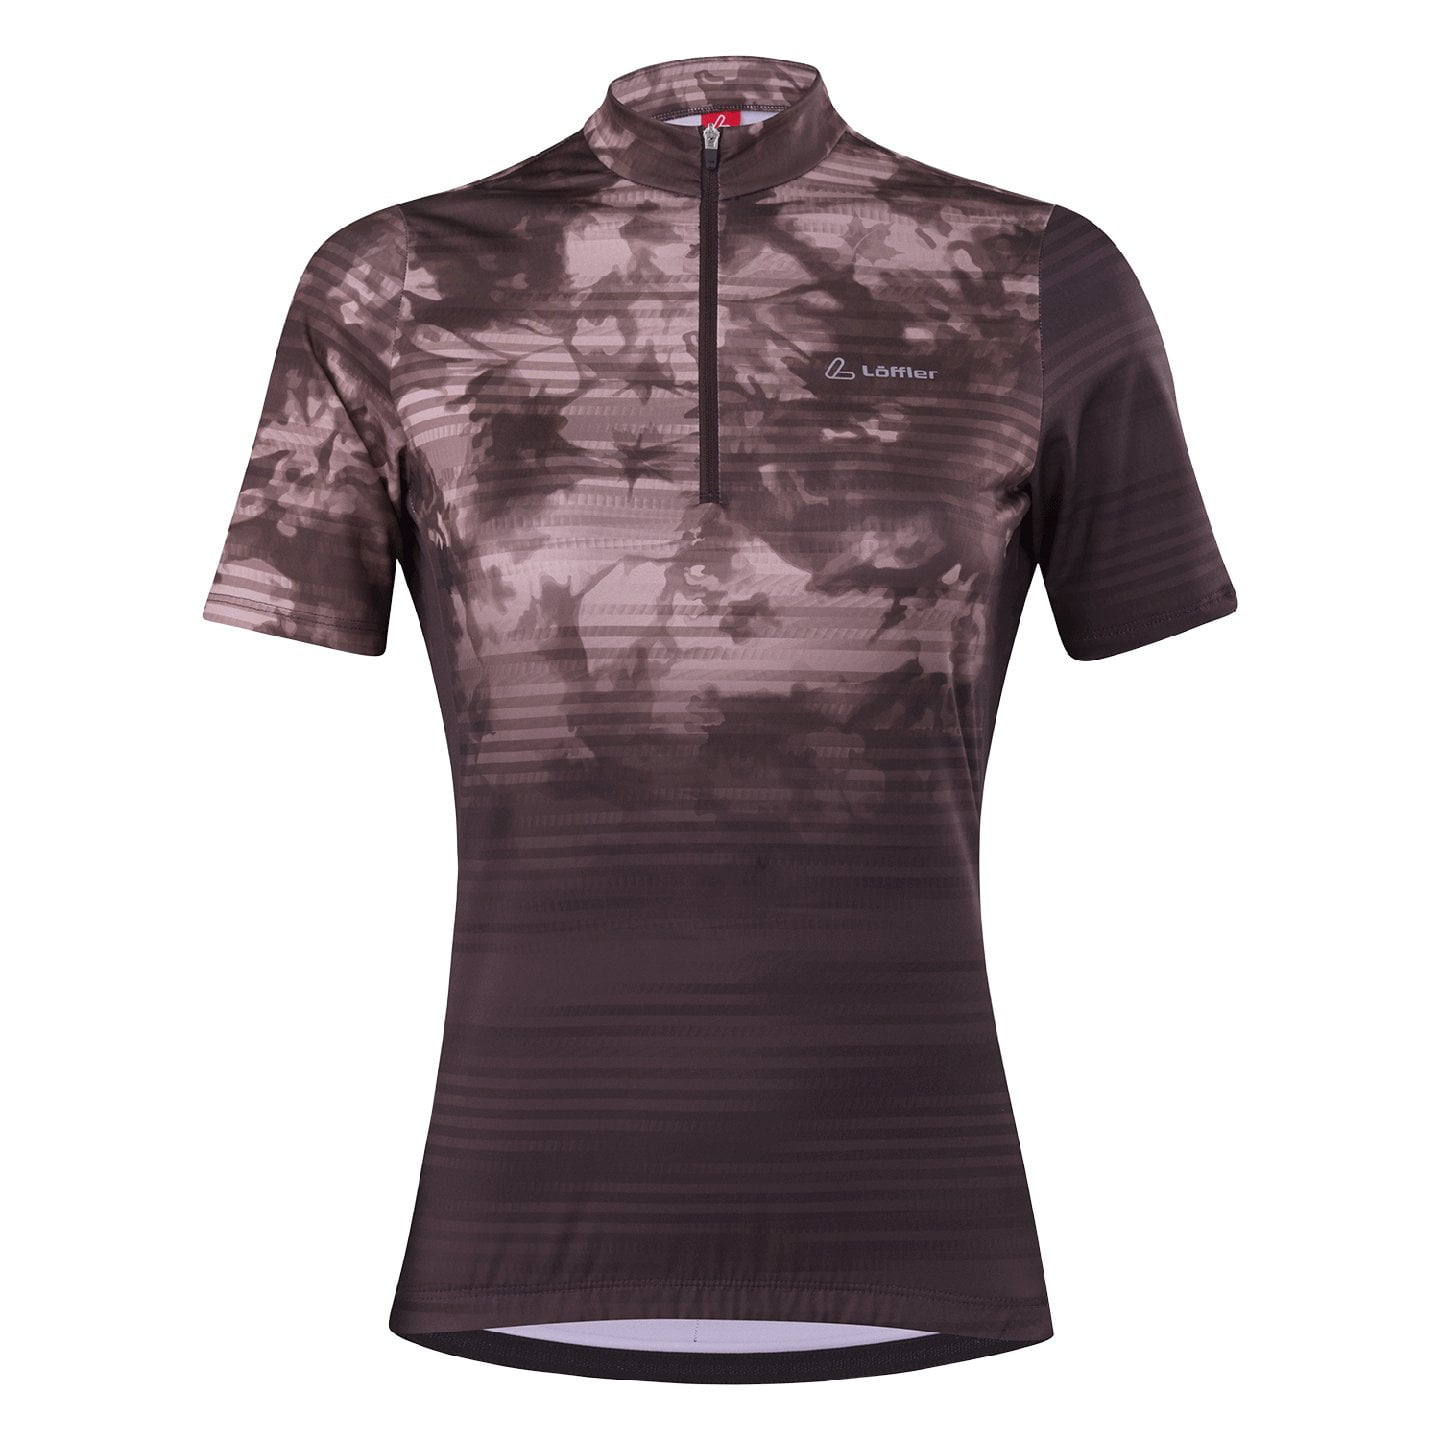 LOFFLER Spirit Mid Women’s Short Sleeve Jersey, size 38, Cycling shirt, Cycling gear